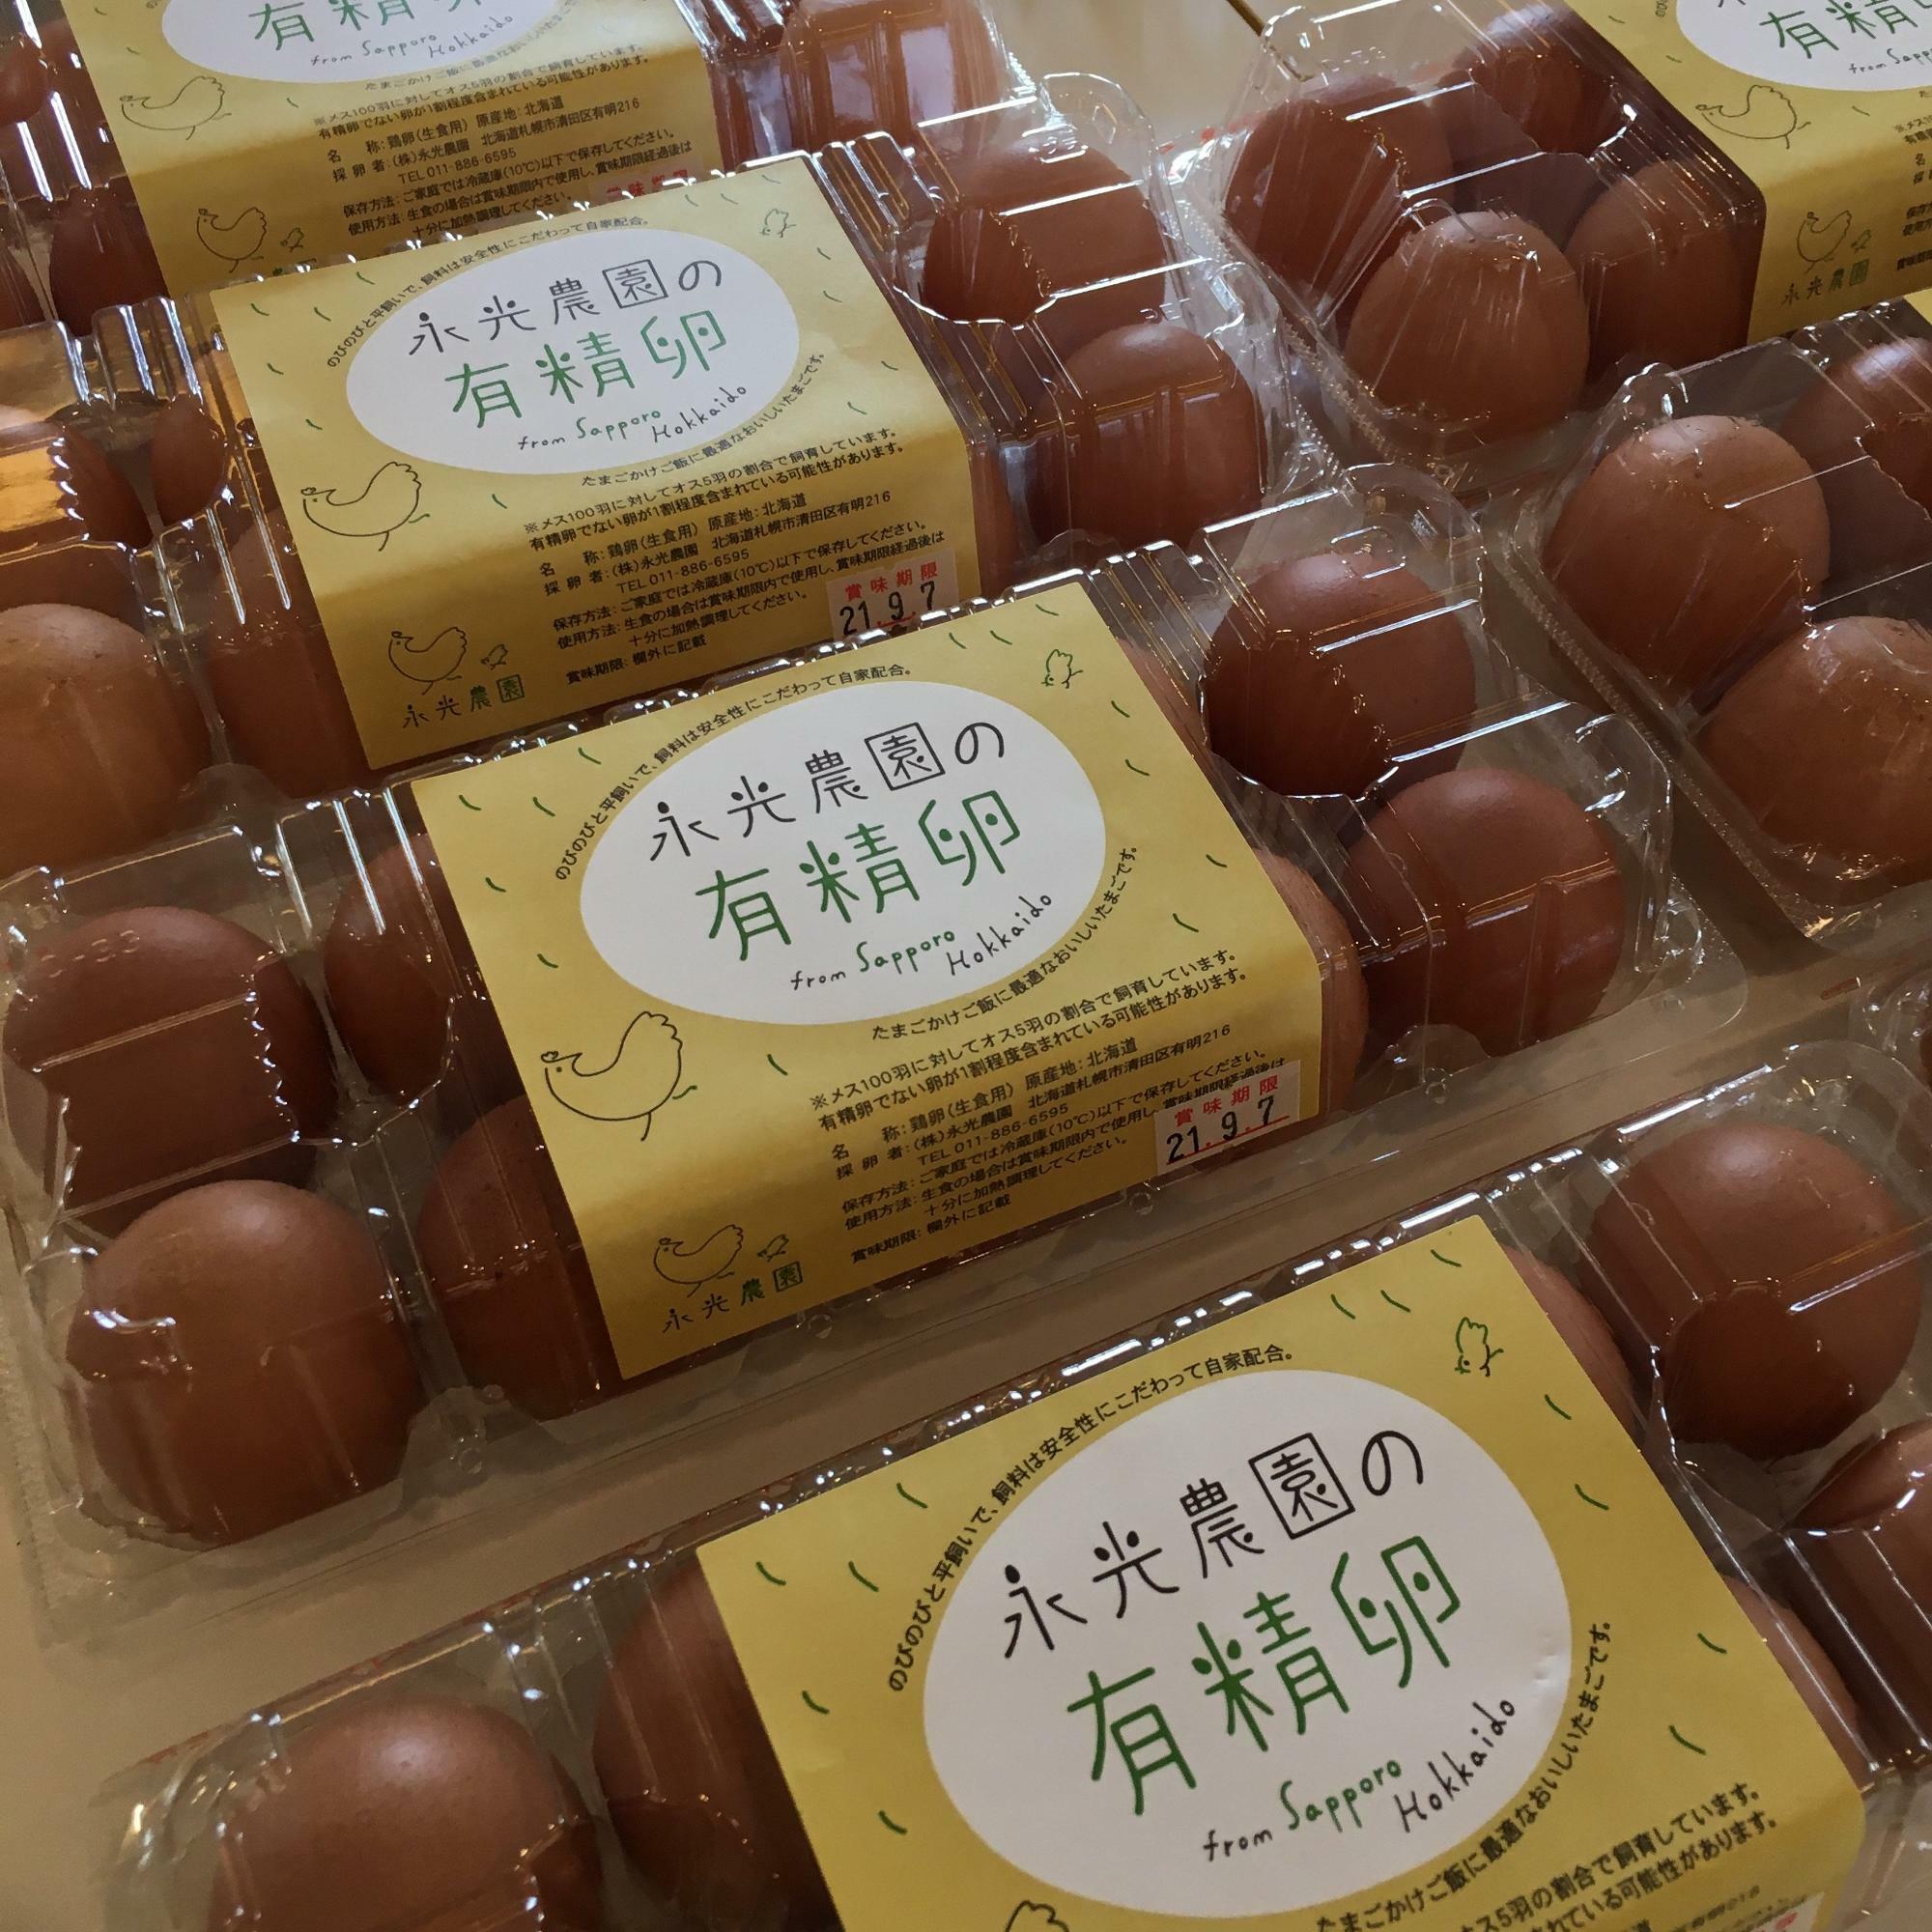 店内で販売されている卵。卵不足の報道後は品薄になっているとか